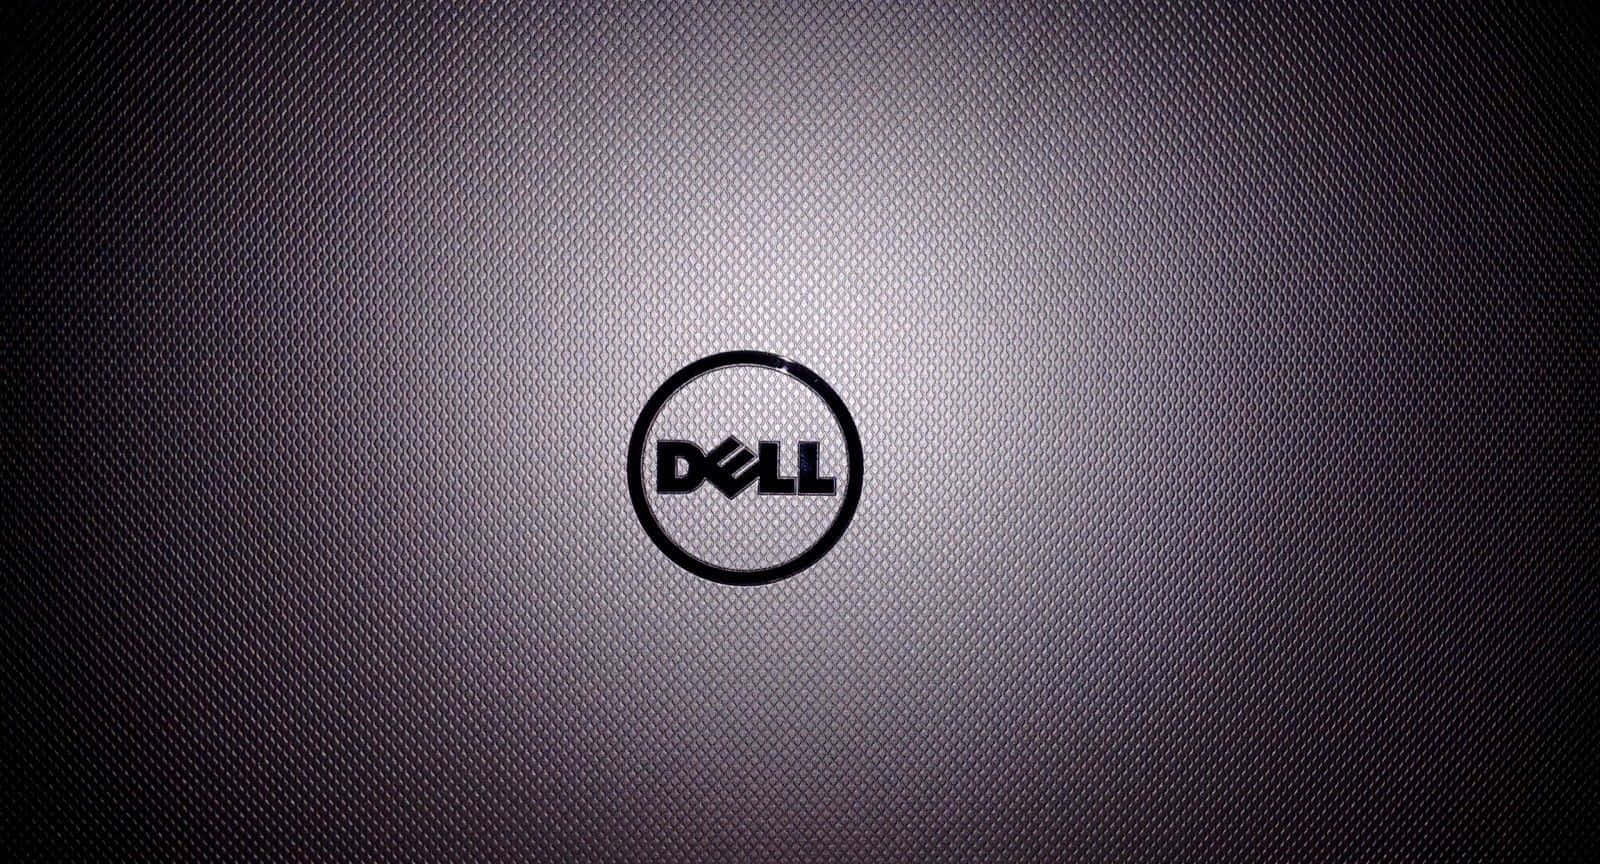 Mantentea La Vanguardia Con La Tecnología De Dell